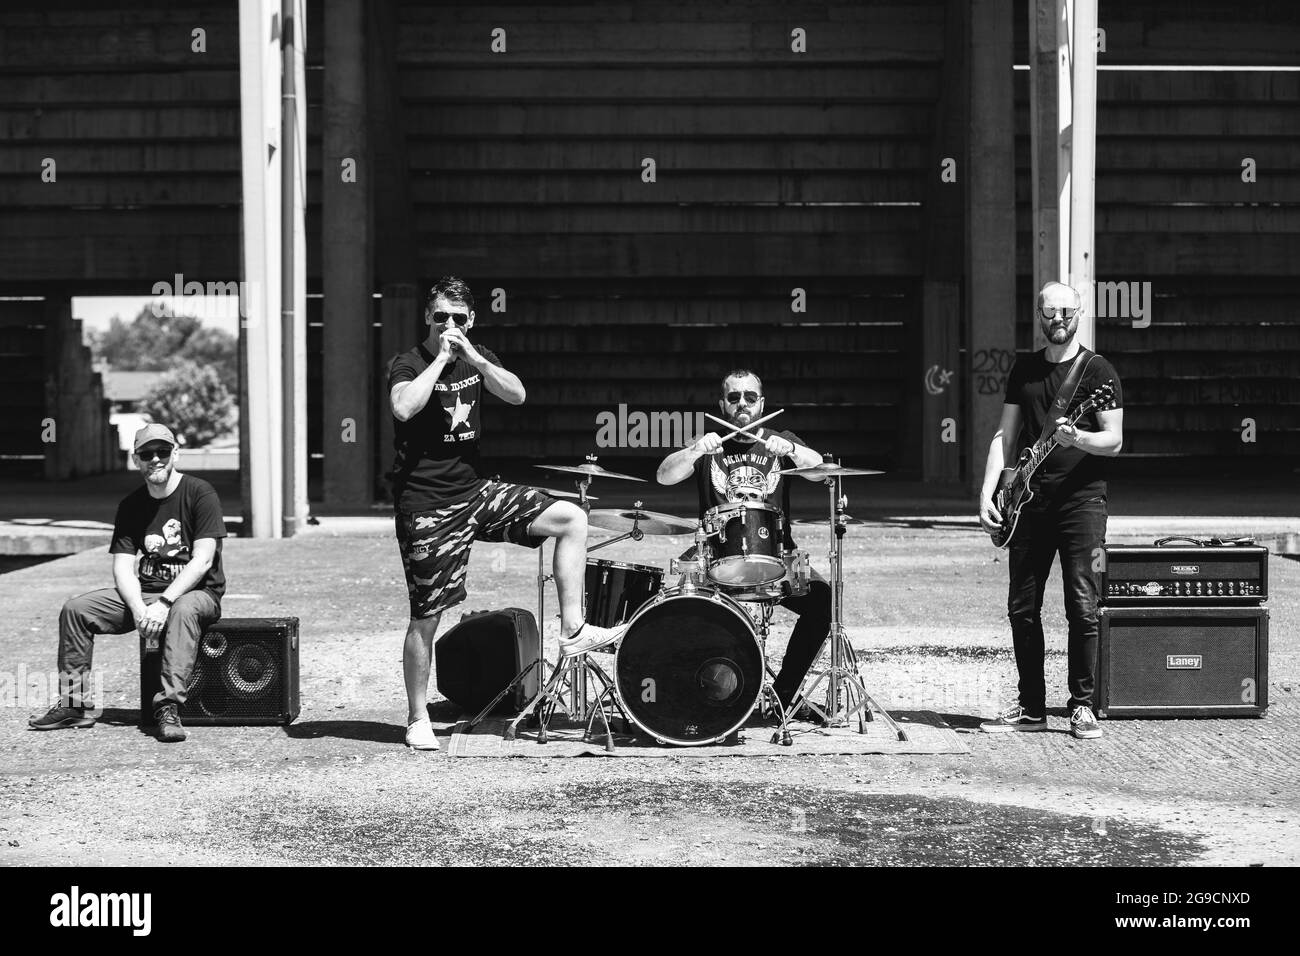 DISTRETTO DI BRCKO, BOSNIA-ERZEGOVINA - 26 giugno 2020: Una ripresa monocromatica di una band rock che si esibisce all'aperto durante una calda giornata estiva. Foto Stock